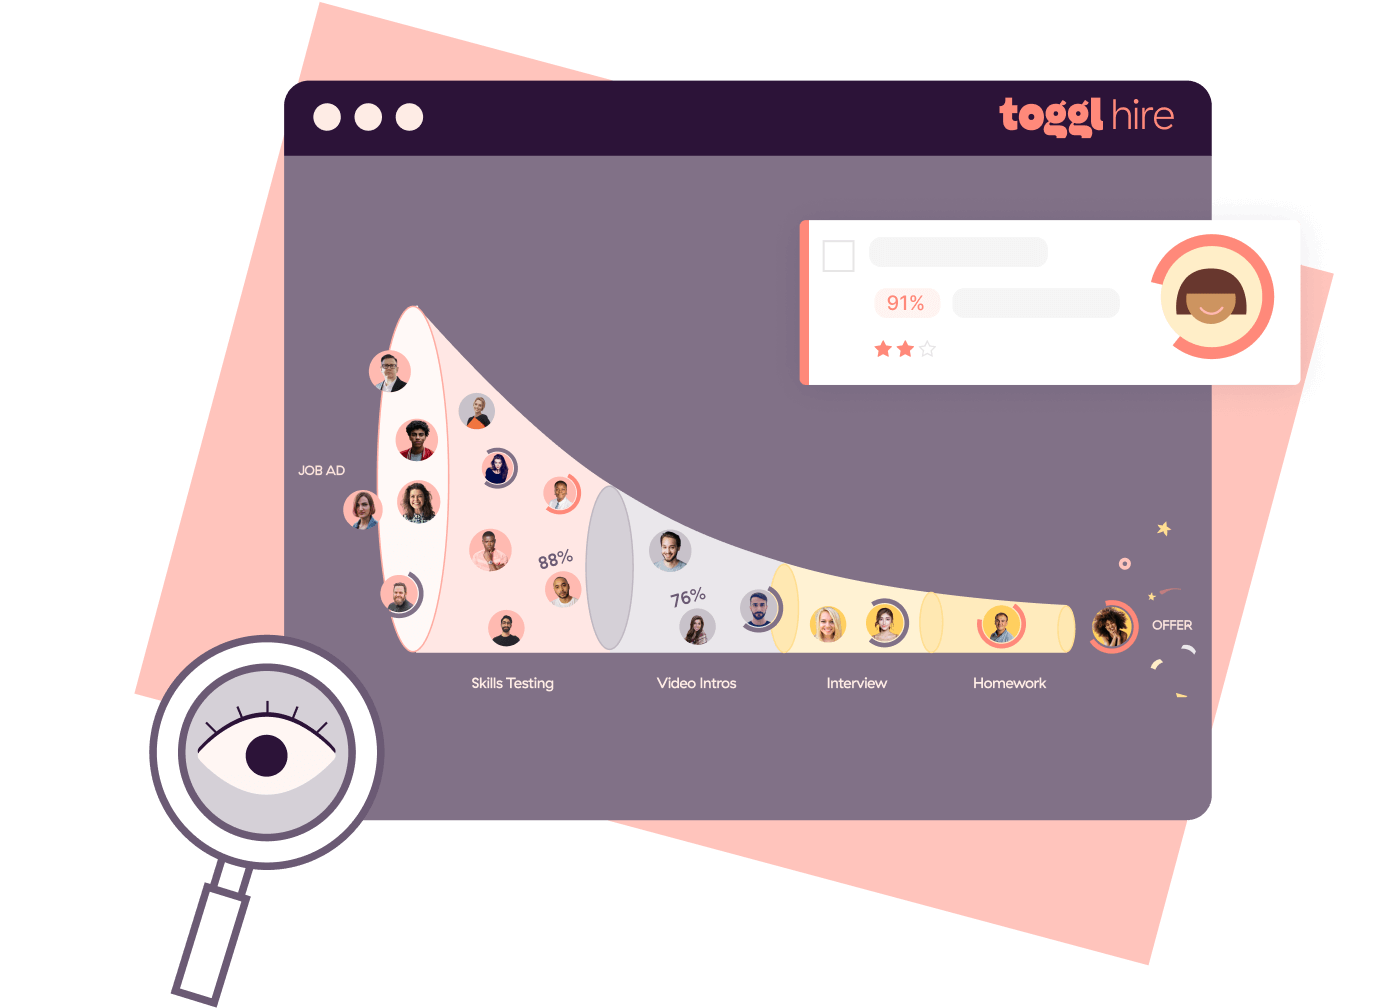 Toggl Hire - Recruitment process